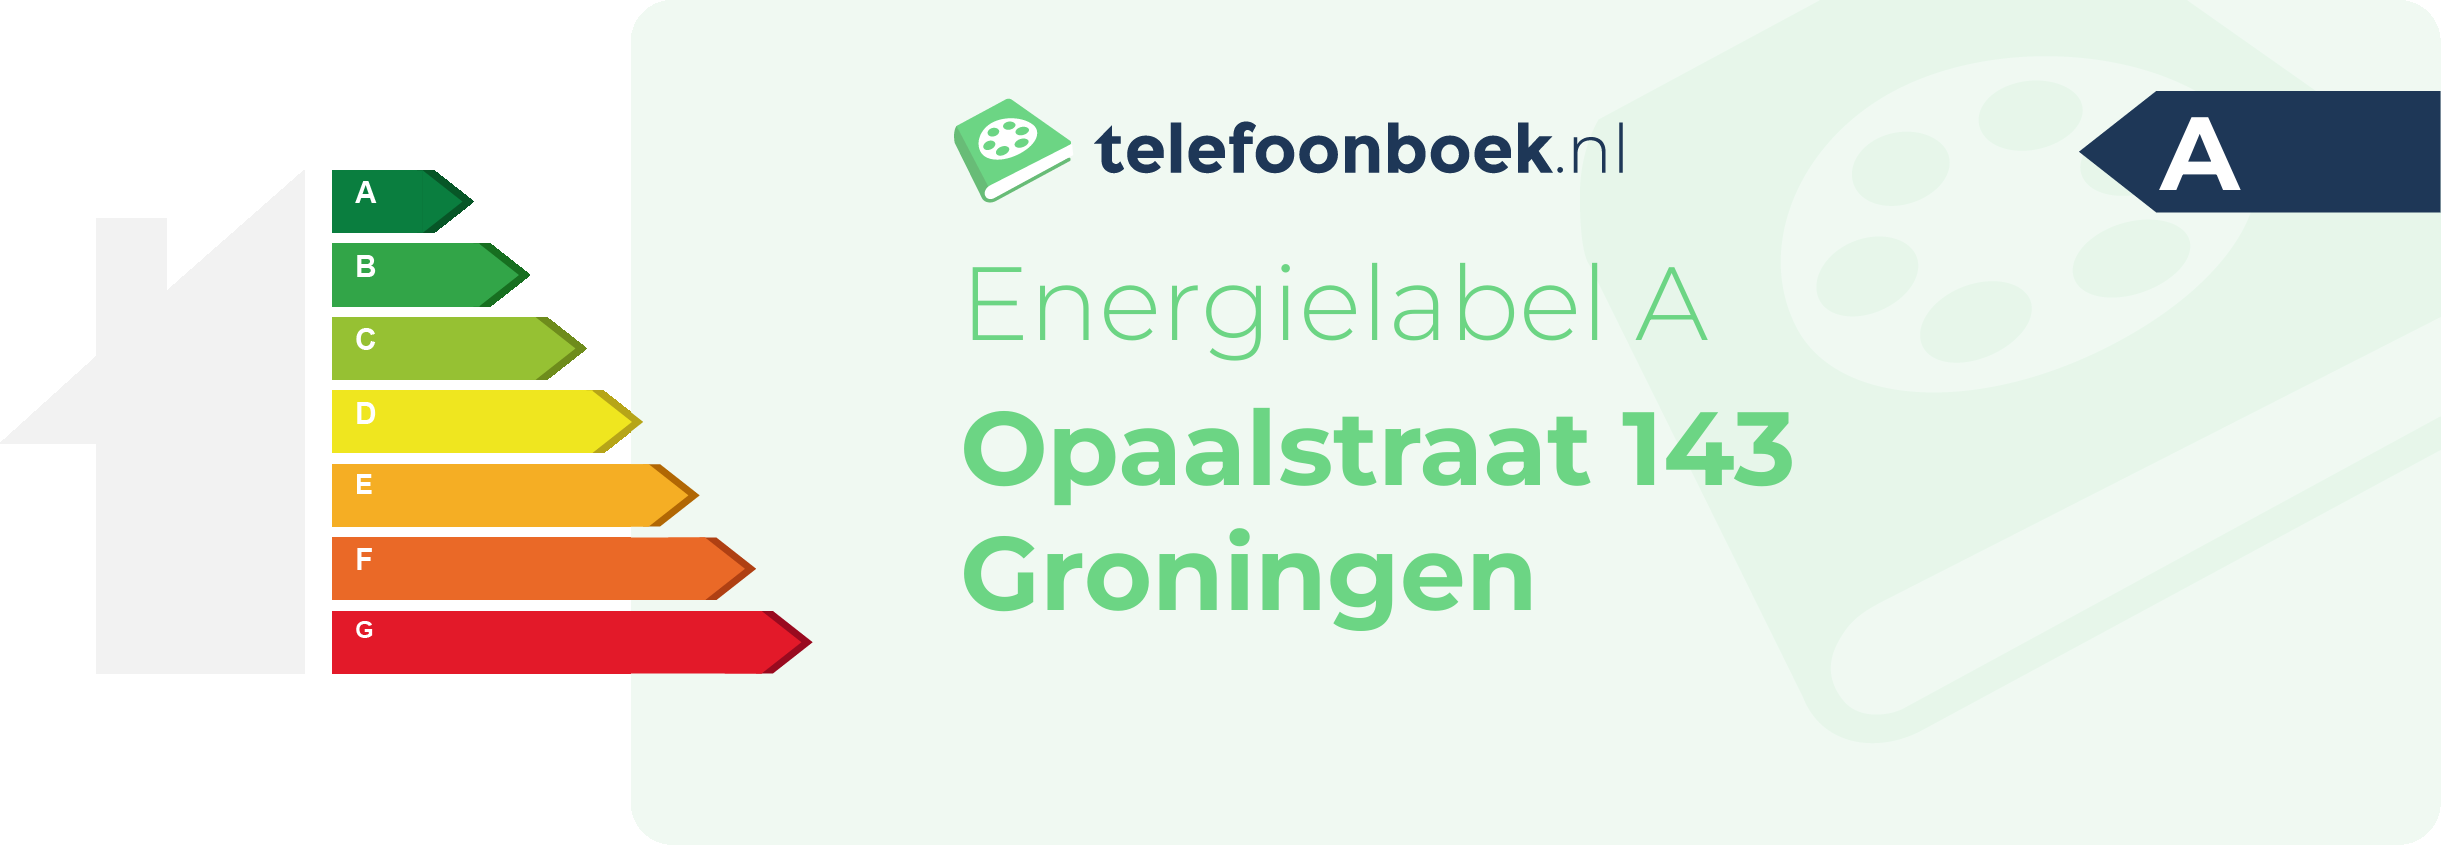 Energielabel Opaalstraat 143 Groningen